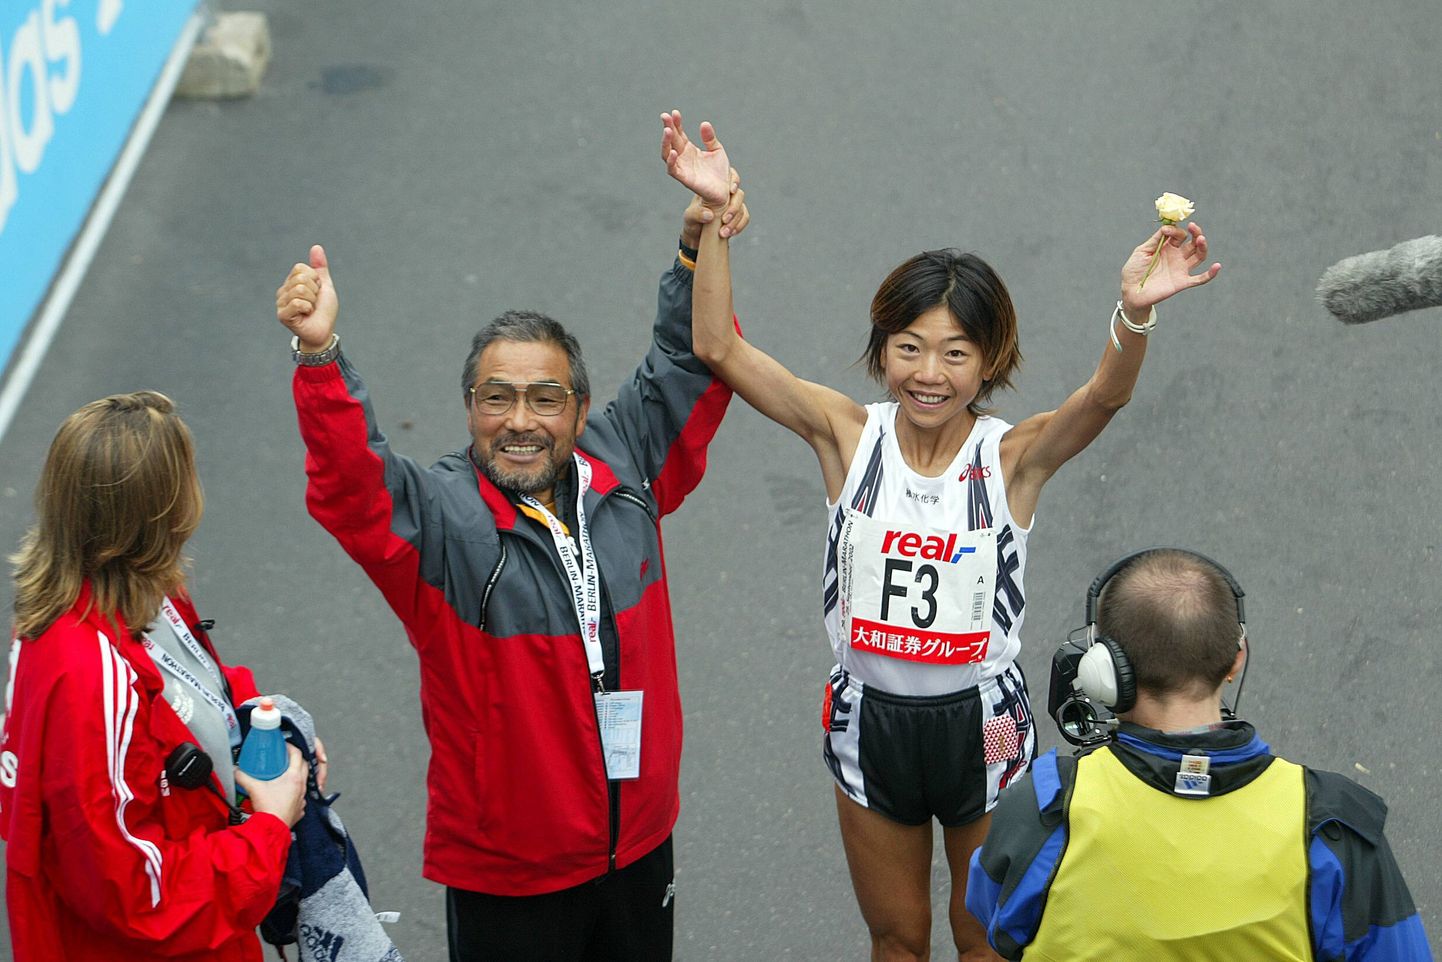 Treener Yoshio Koide koos oma kuulsaima õpilase Naoko Takahashiga pärast ajaloolist maailmarekordijooksu, 2001. aasta Berliini maratonil.